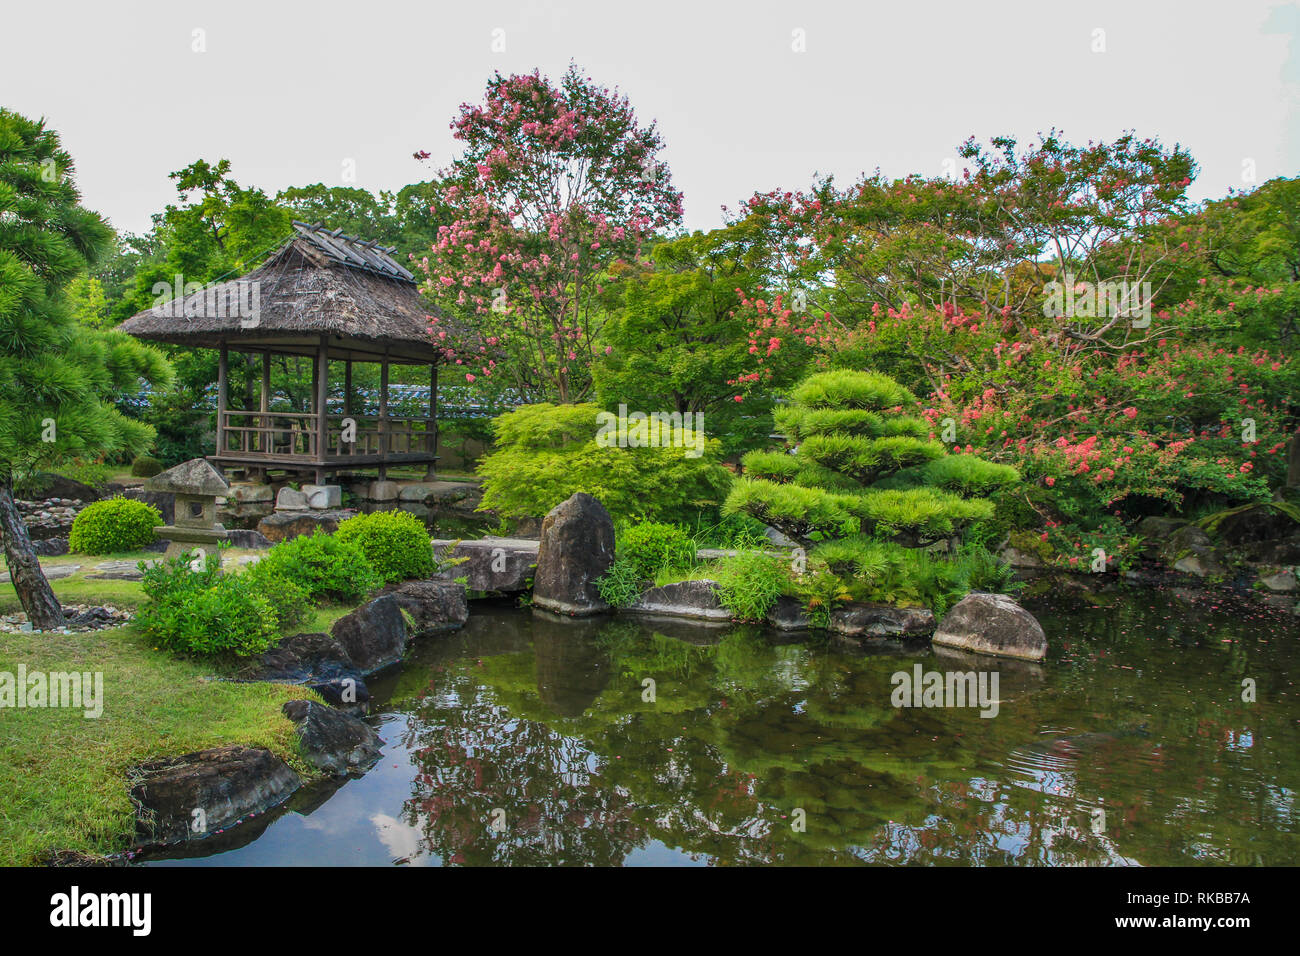 Belle architecture de jardin japonais Koko-en garden, Japon Banque D'Images